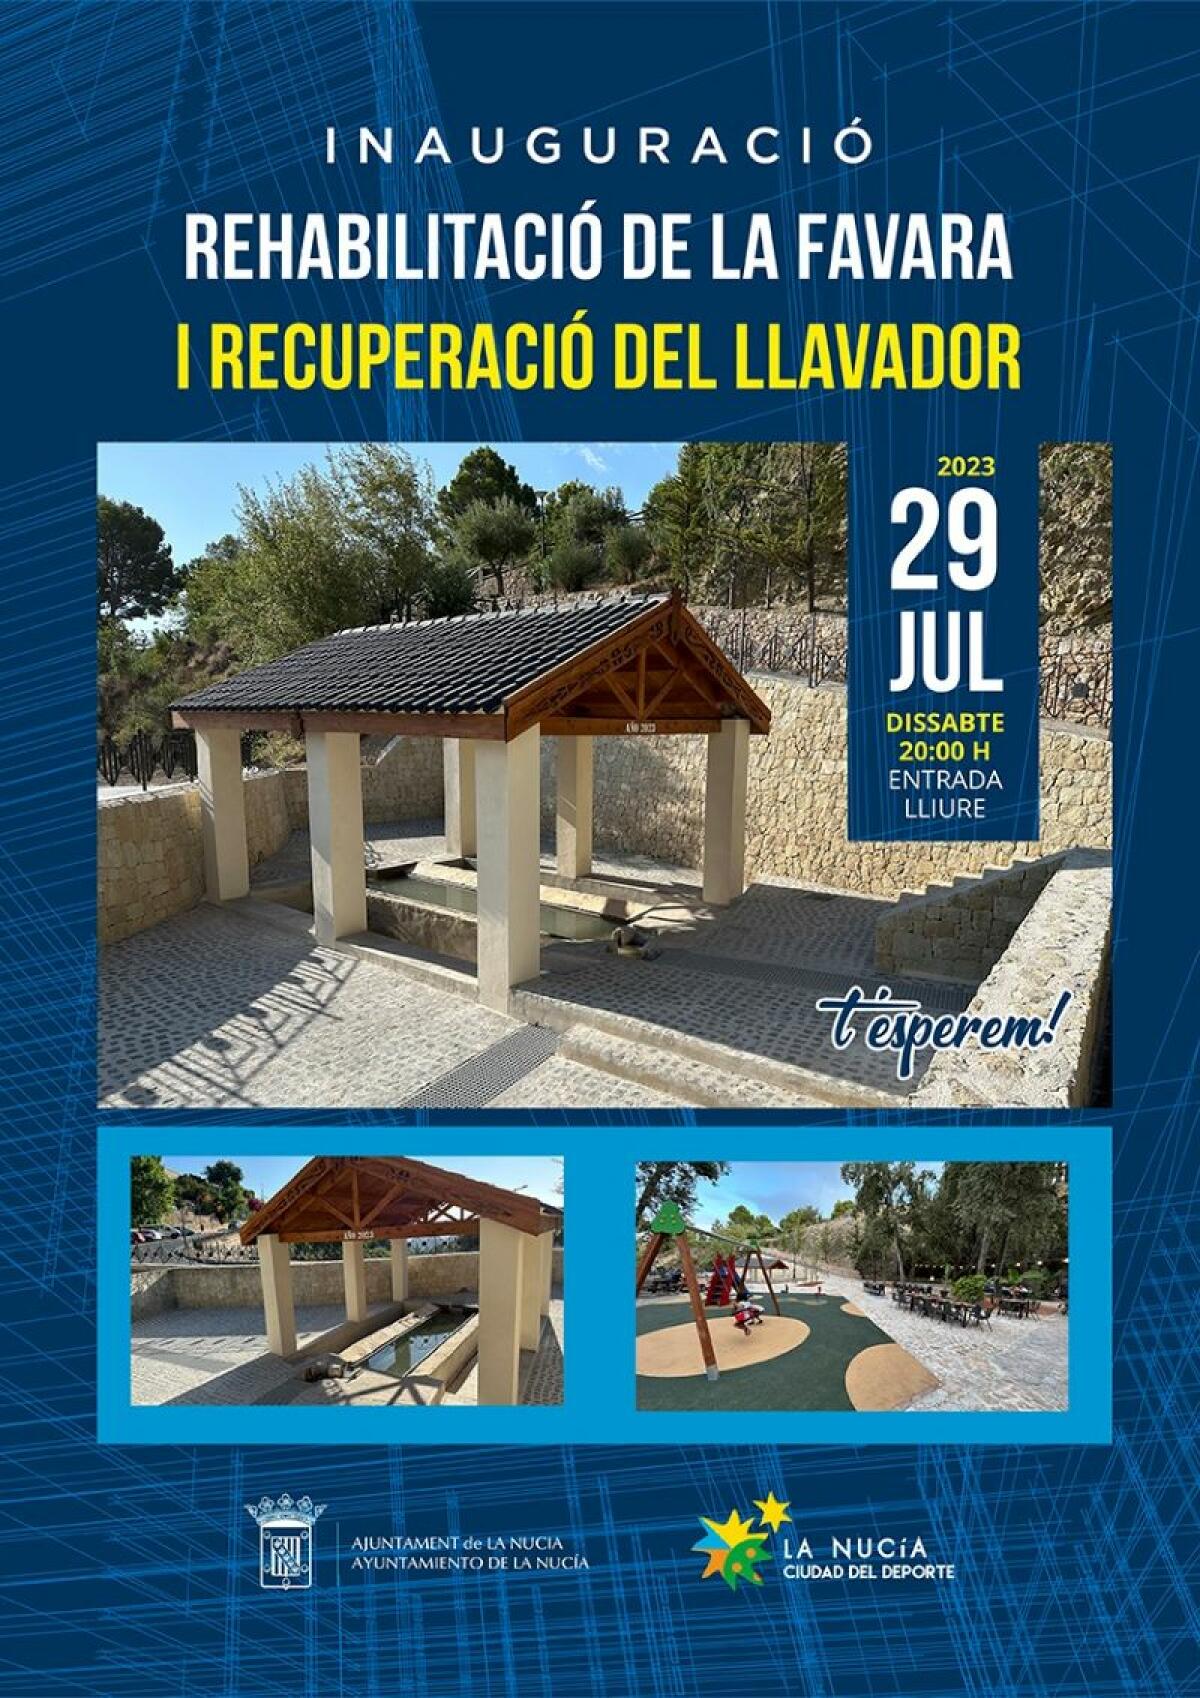 Mañana inauguración de la “Rehabilitació de la Favara i Recuperació del Llavador” 